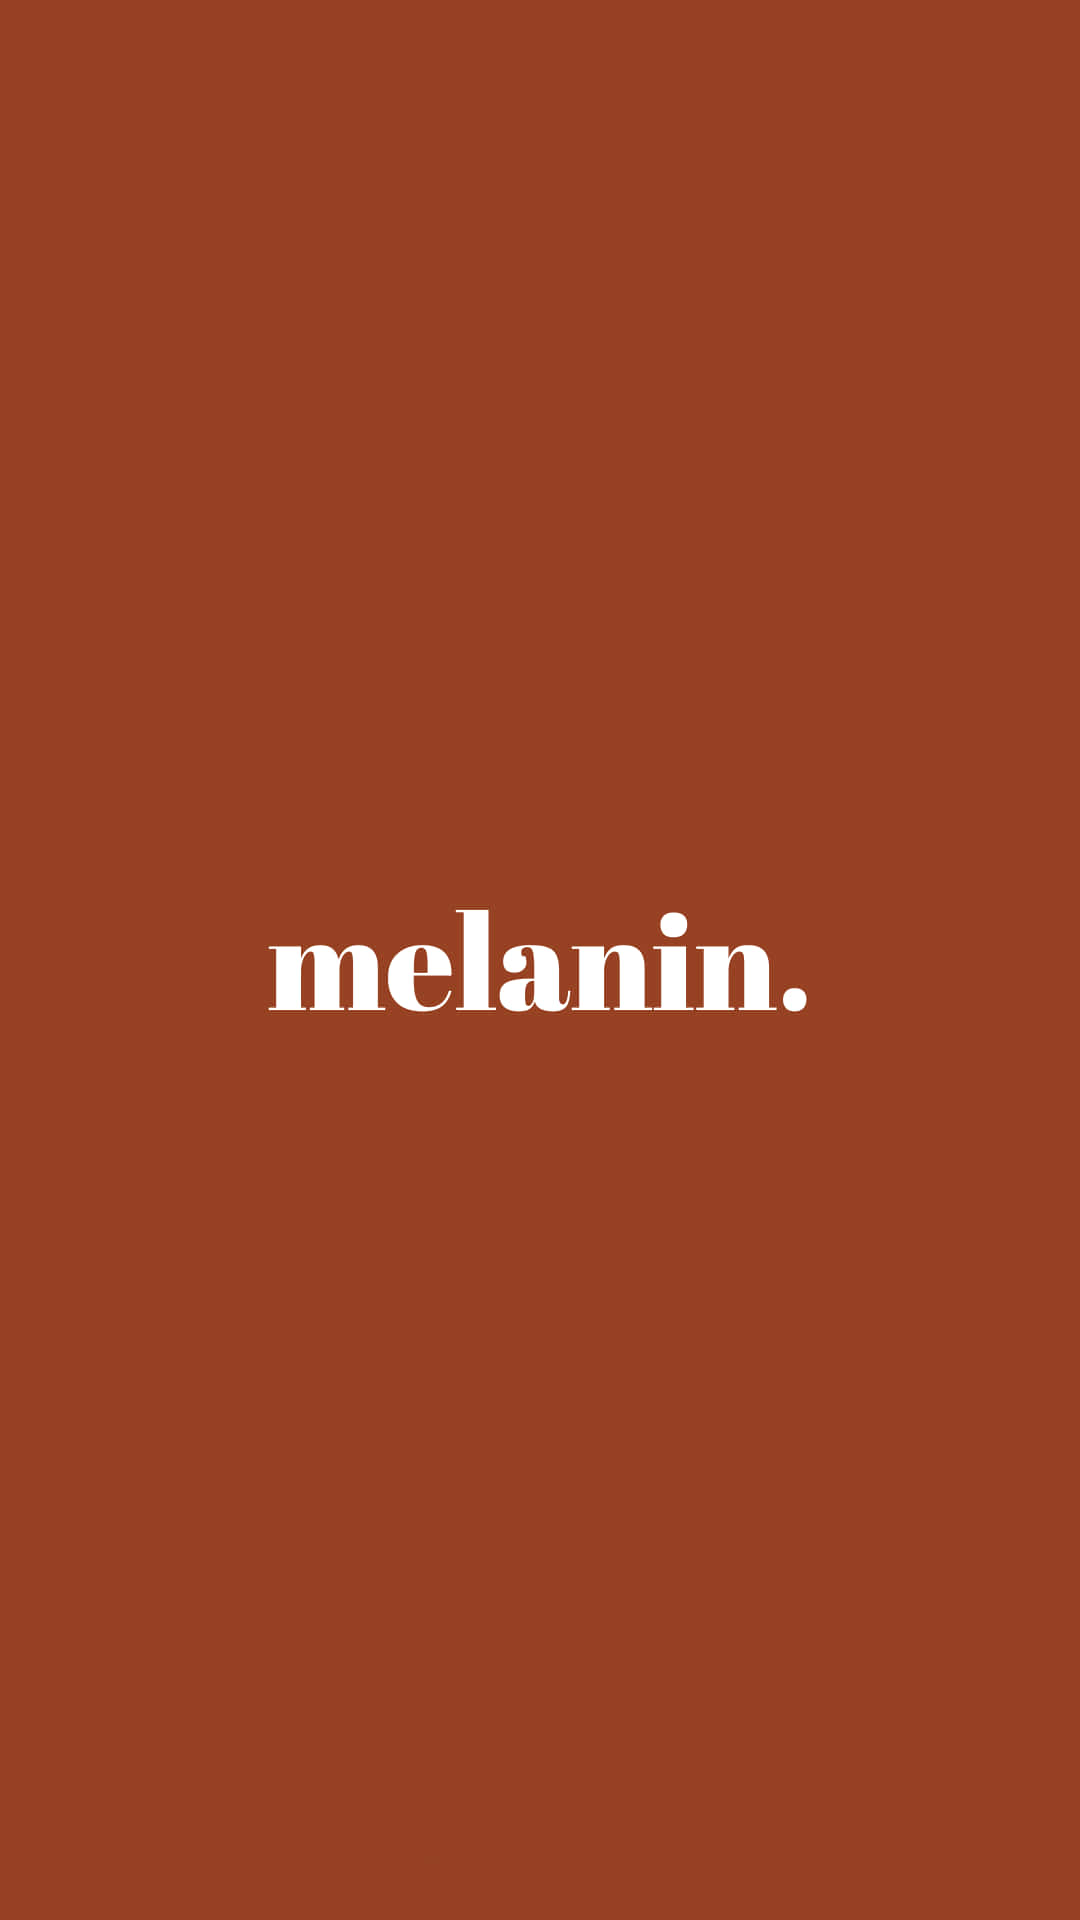 Melainn Logo On A Brown Background Wallpaper